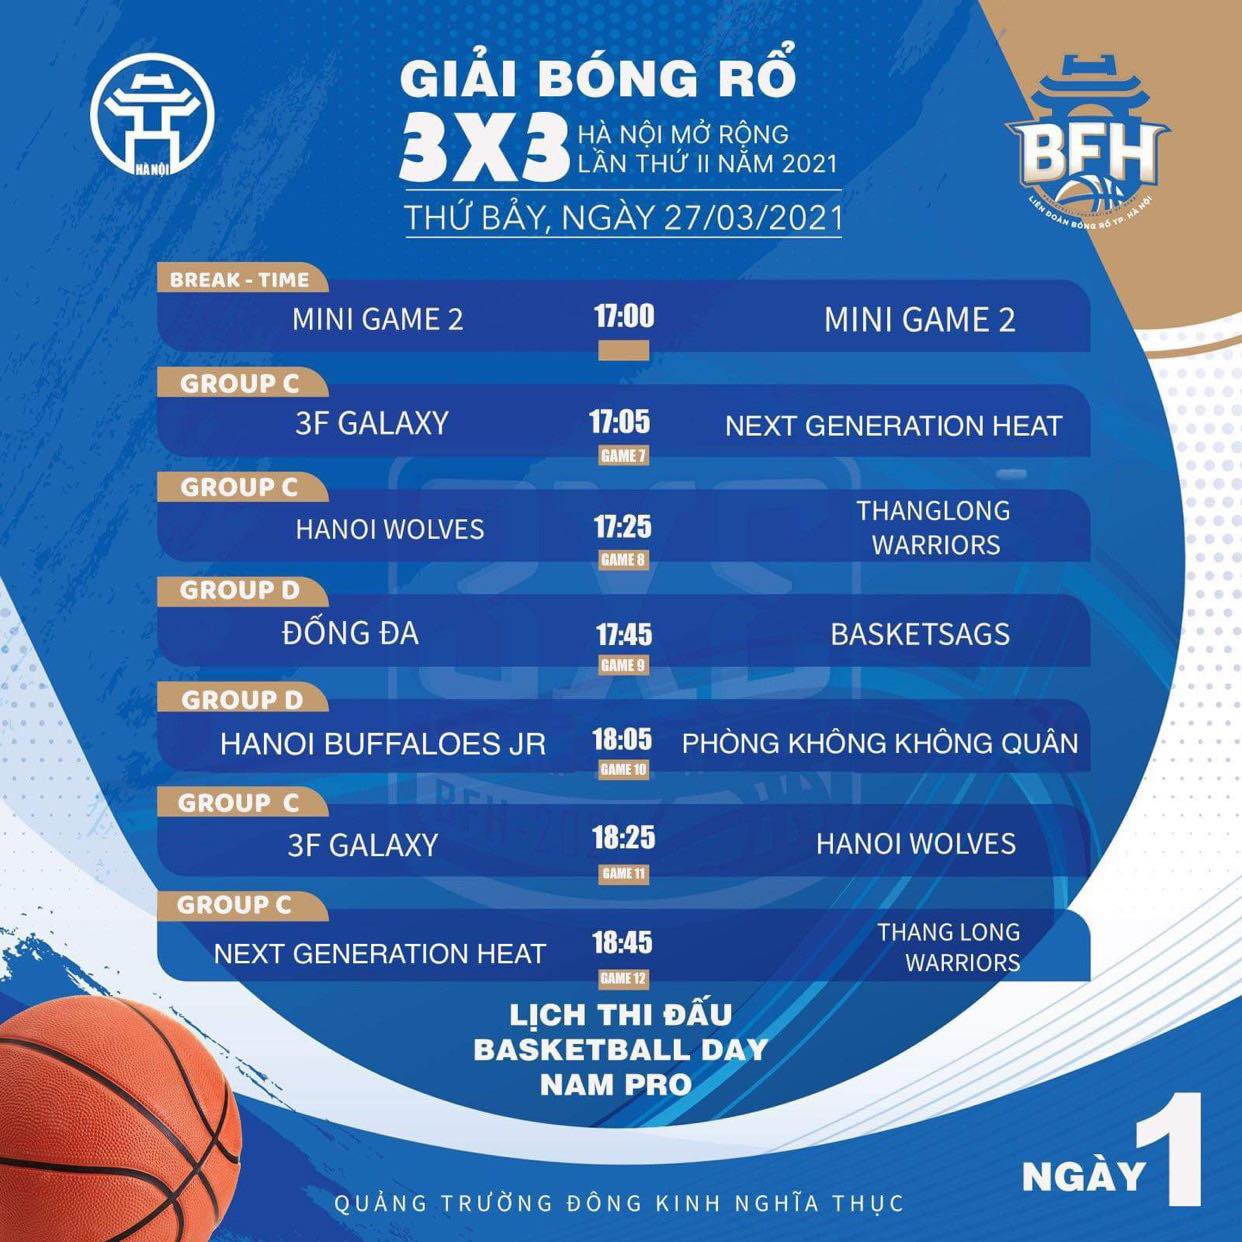 Lịch thi đấu giải bóng rổ 3x3 Hà Nội mở rộng lần 2 năm 2021 - Ảnh 5